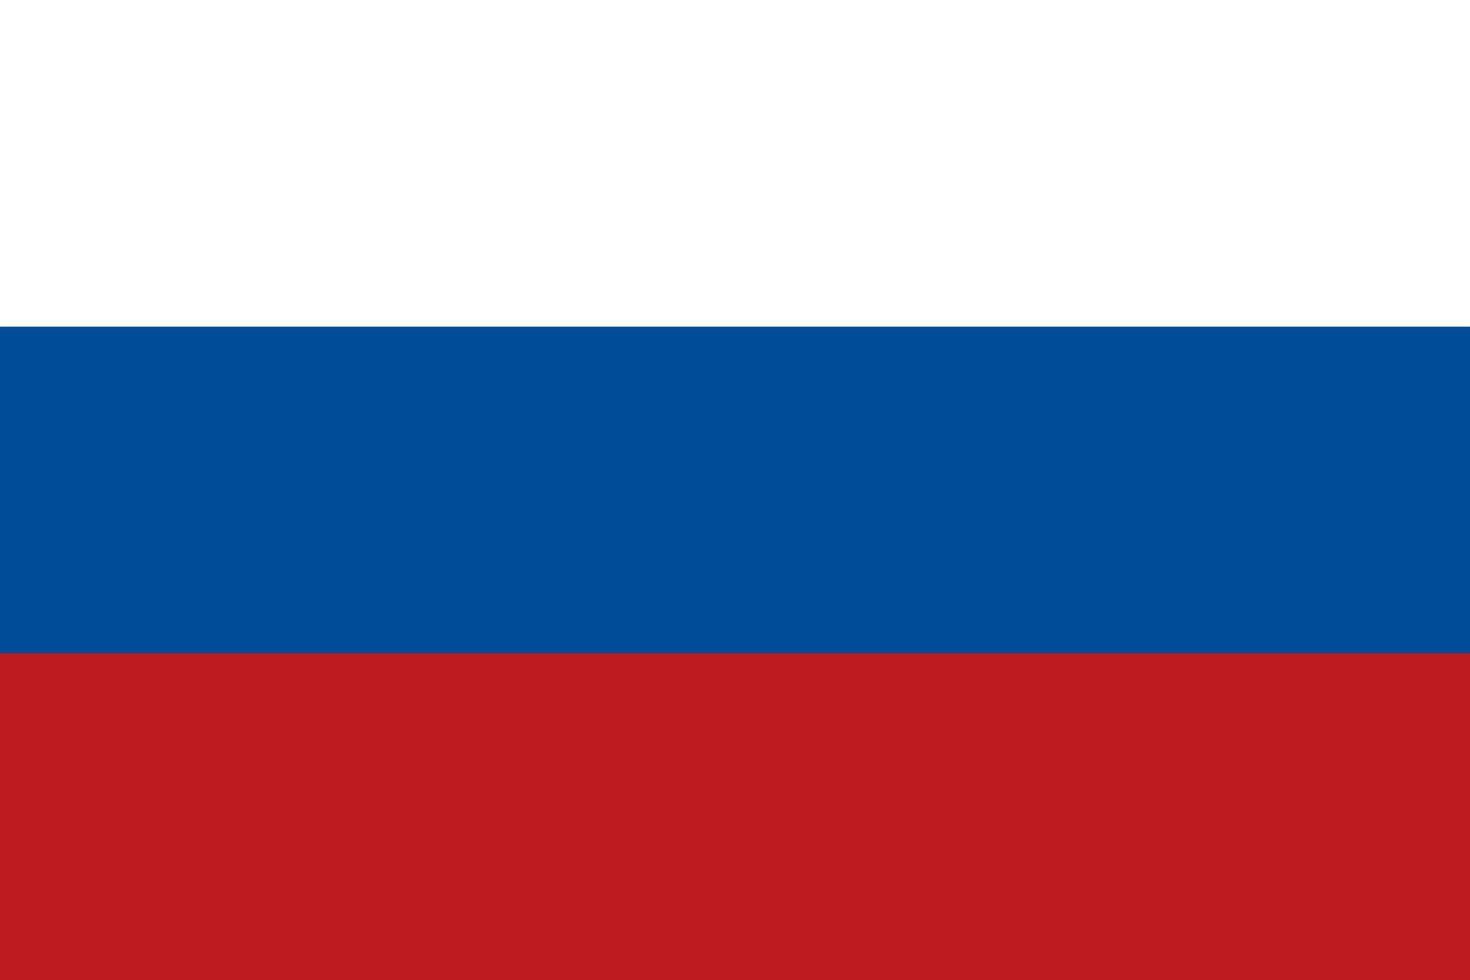 abstracte witte, blauwe en rode kleur achtergrond, zoals de vlag van Rusland. vectorillustratie. vector